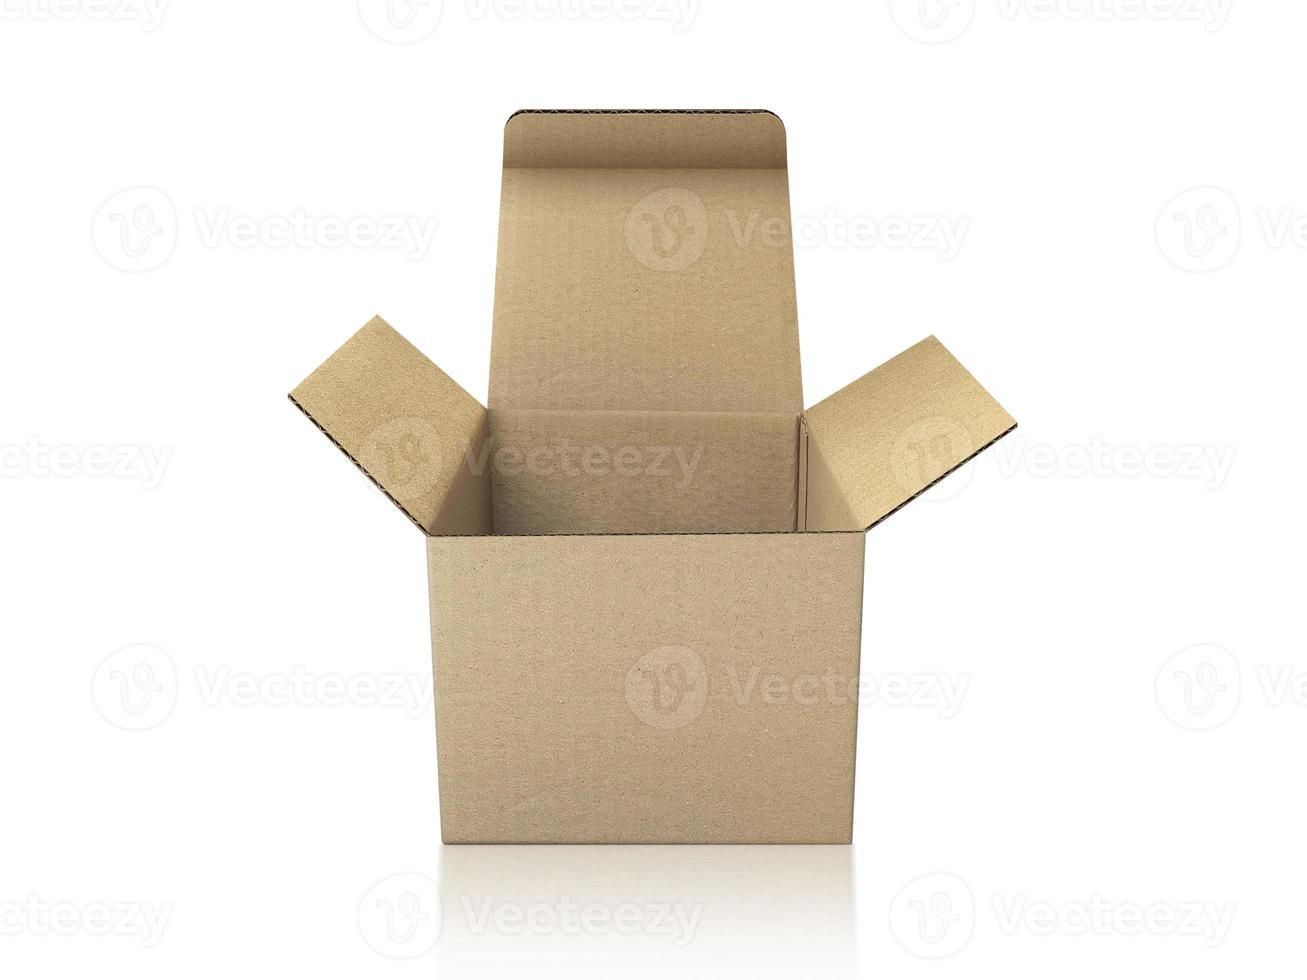 caixas de embalagem em branco - maquete aberta, isolada no fundo branco foto